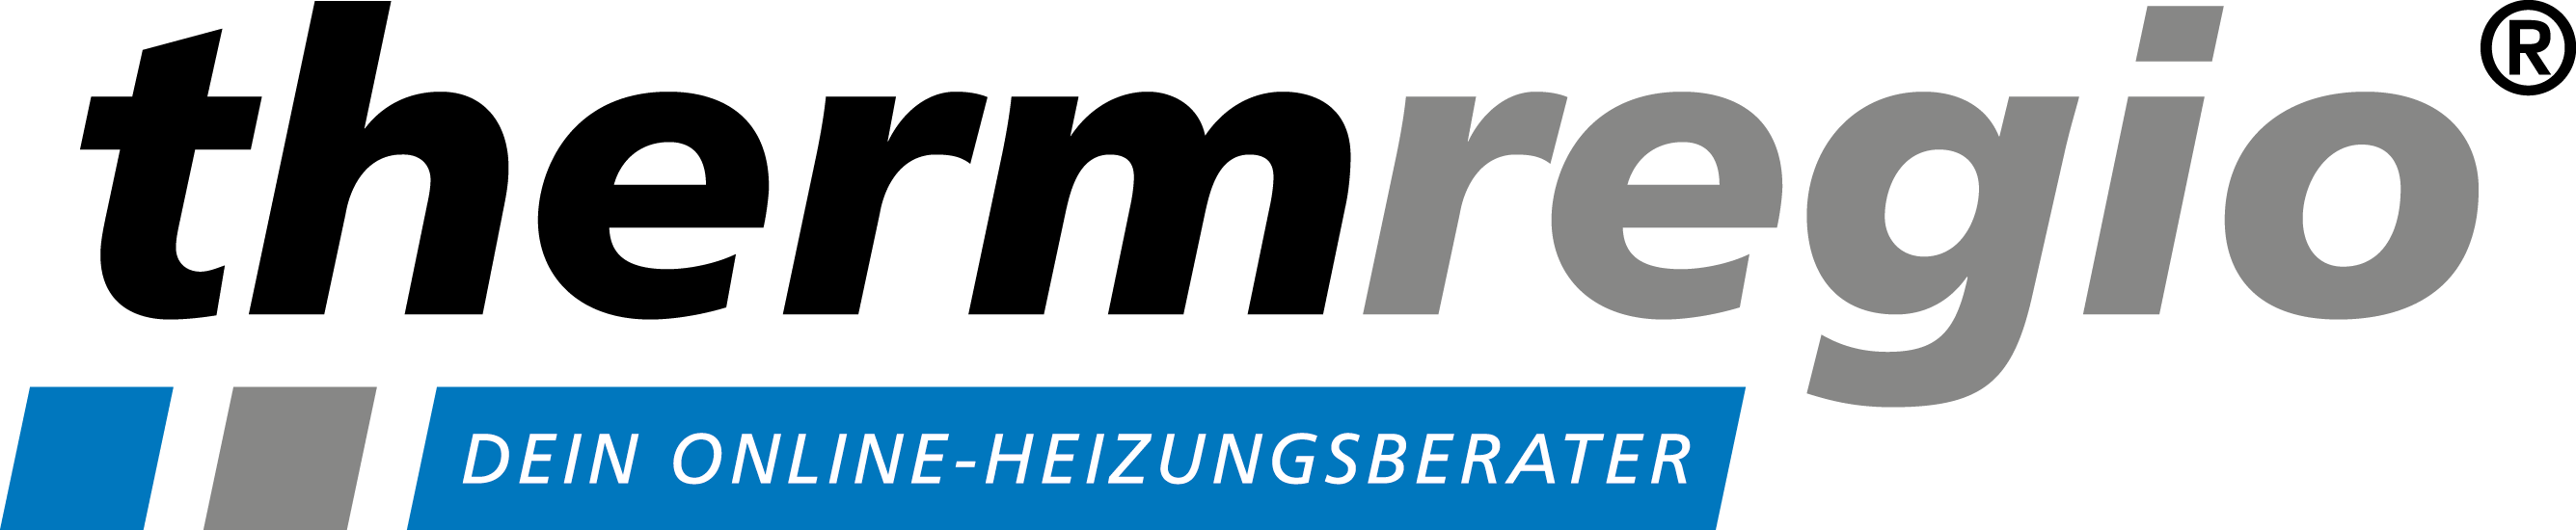 Thermregio GmbH